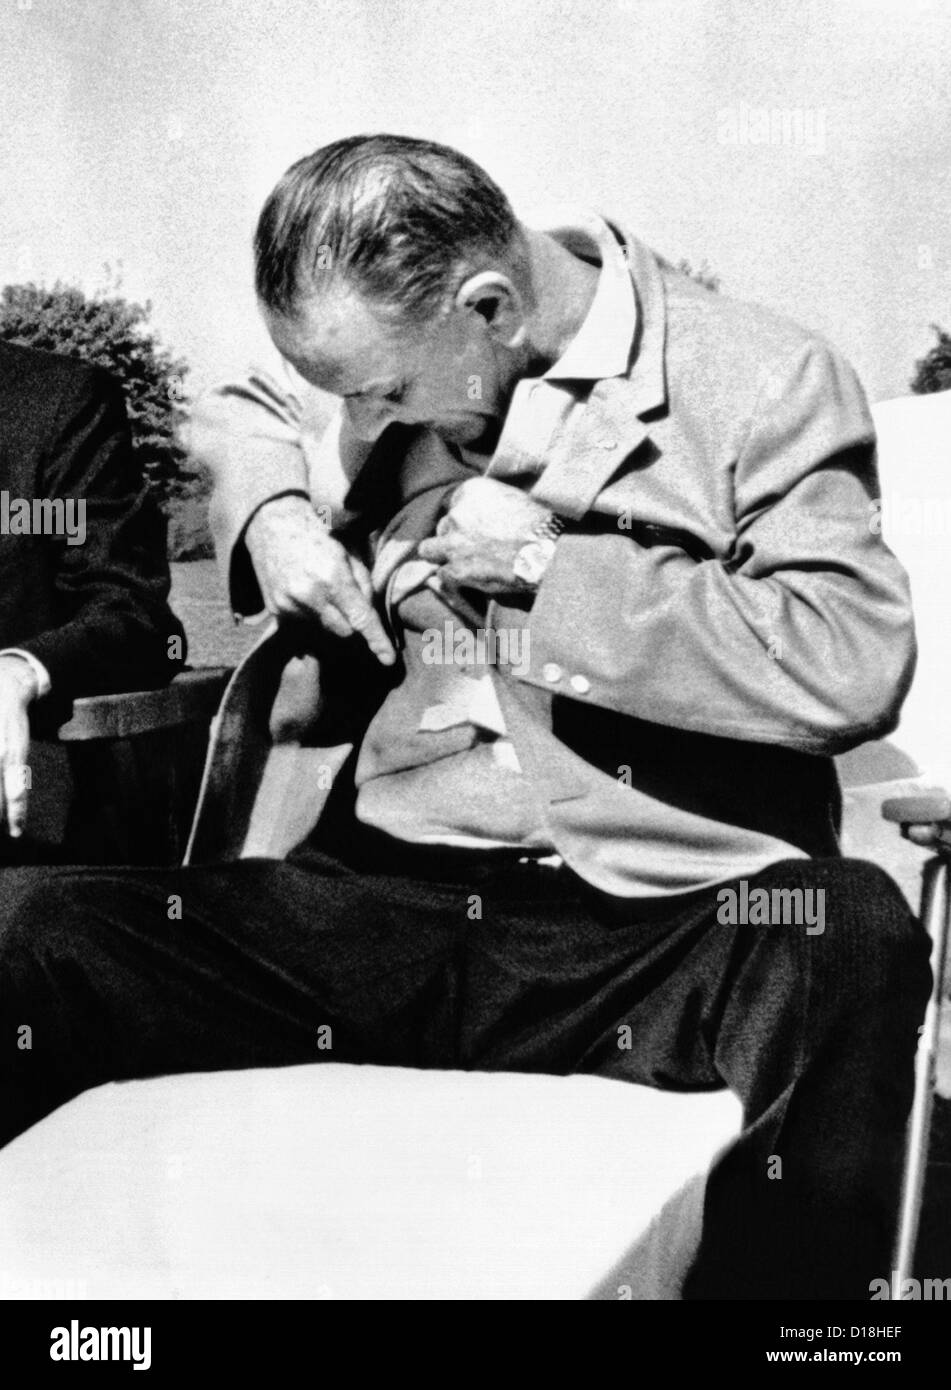 Präsident Lyndon Johnson zeigt der Presse seine Gallenblasen-Operation Narben. Jahrelang galt dies als LBJ es rustikale Verhalten. Es Stockfoto